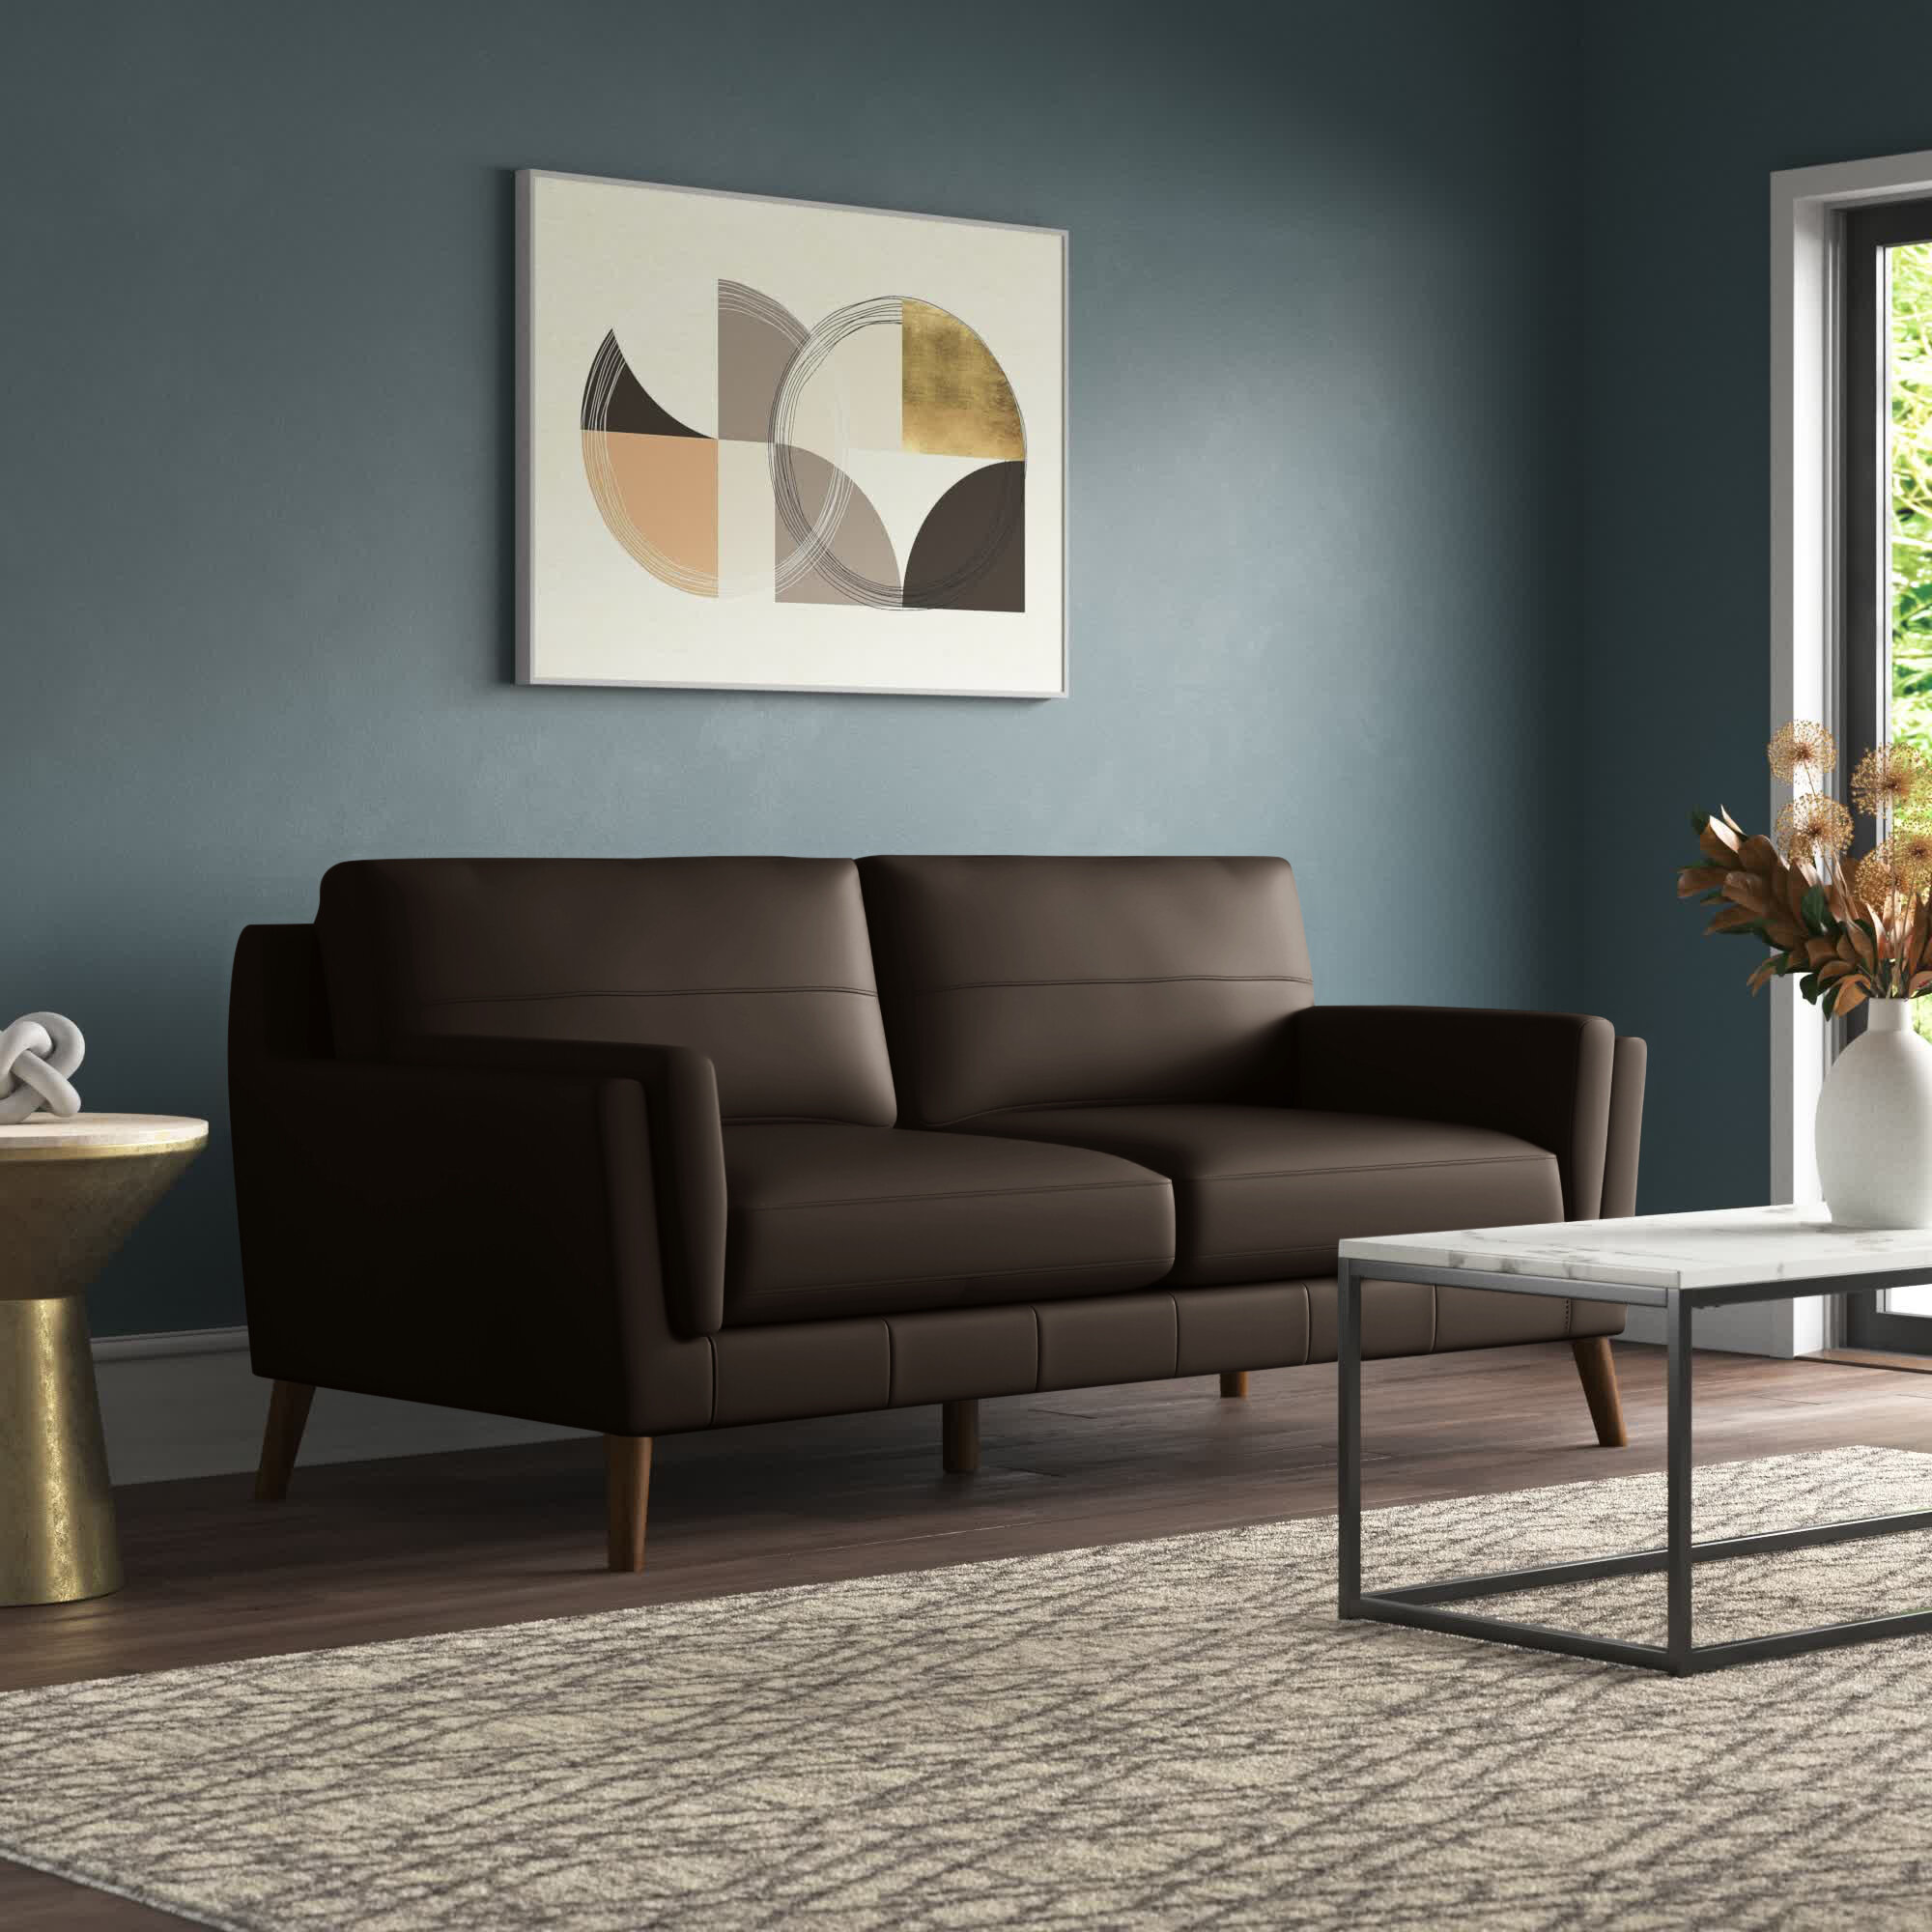 Wade Logan® Azaya Upholstered Sofa, Leather Match & Reviews | Wayfair